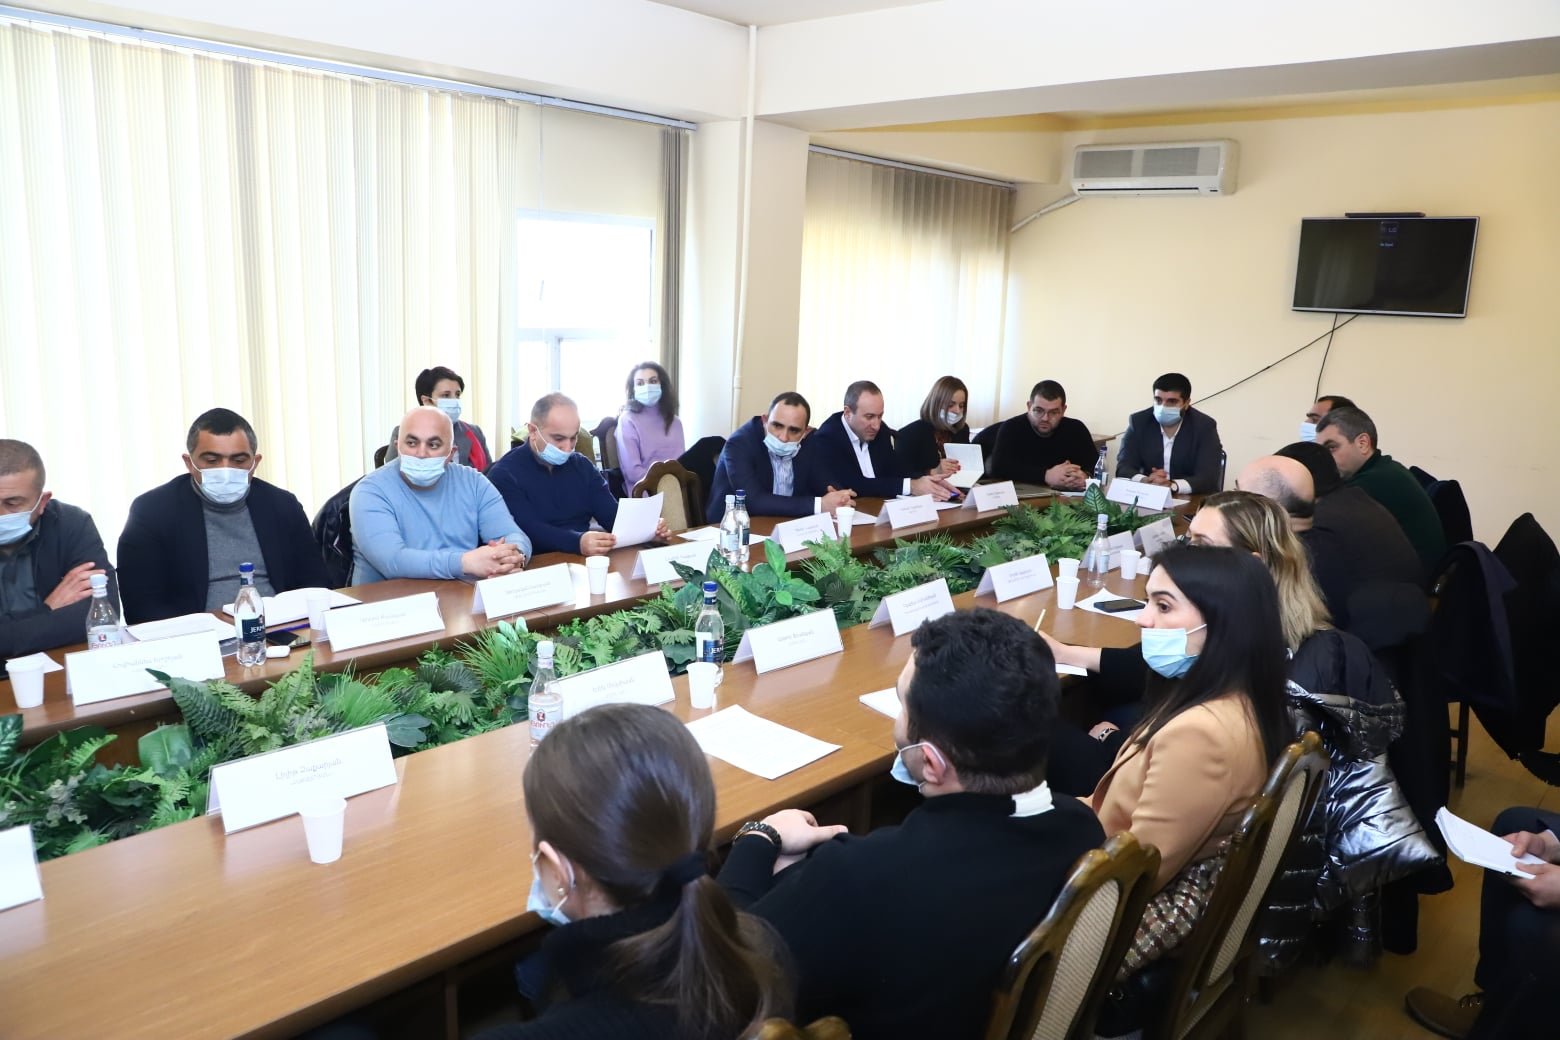 Գործարարների հետ քննարկվել է Հայաստանի տեքստիլ արդյունաբերության աջակցման ծրագիրը